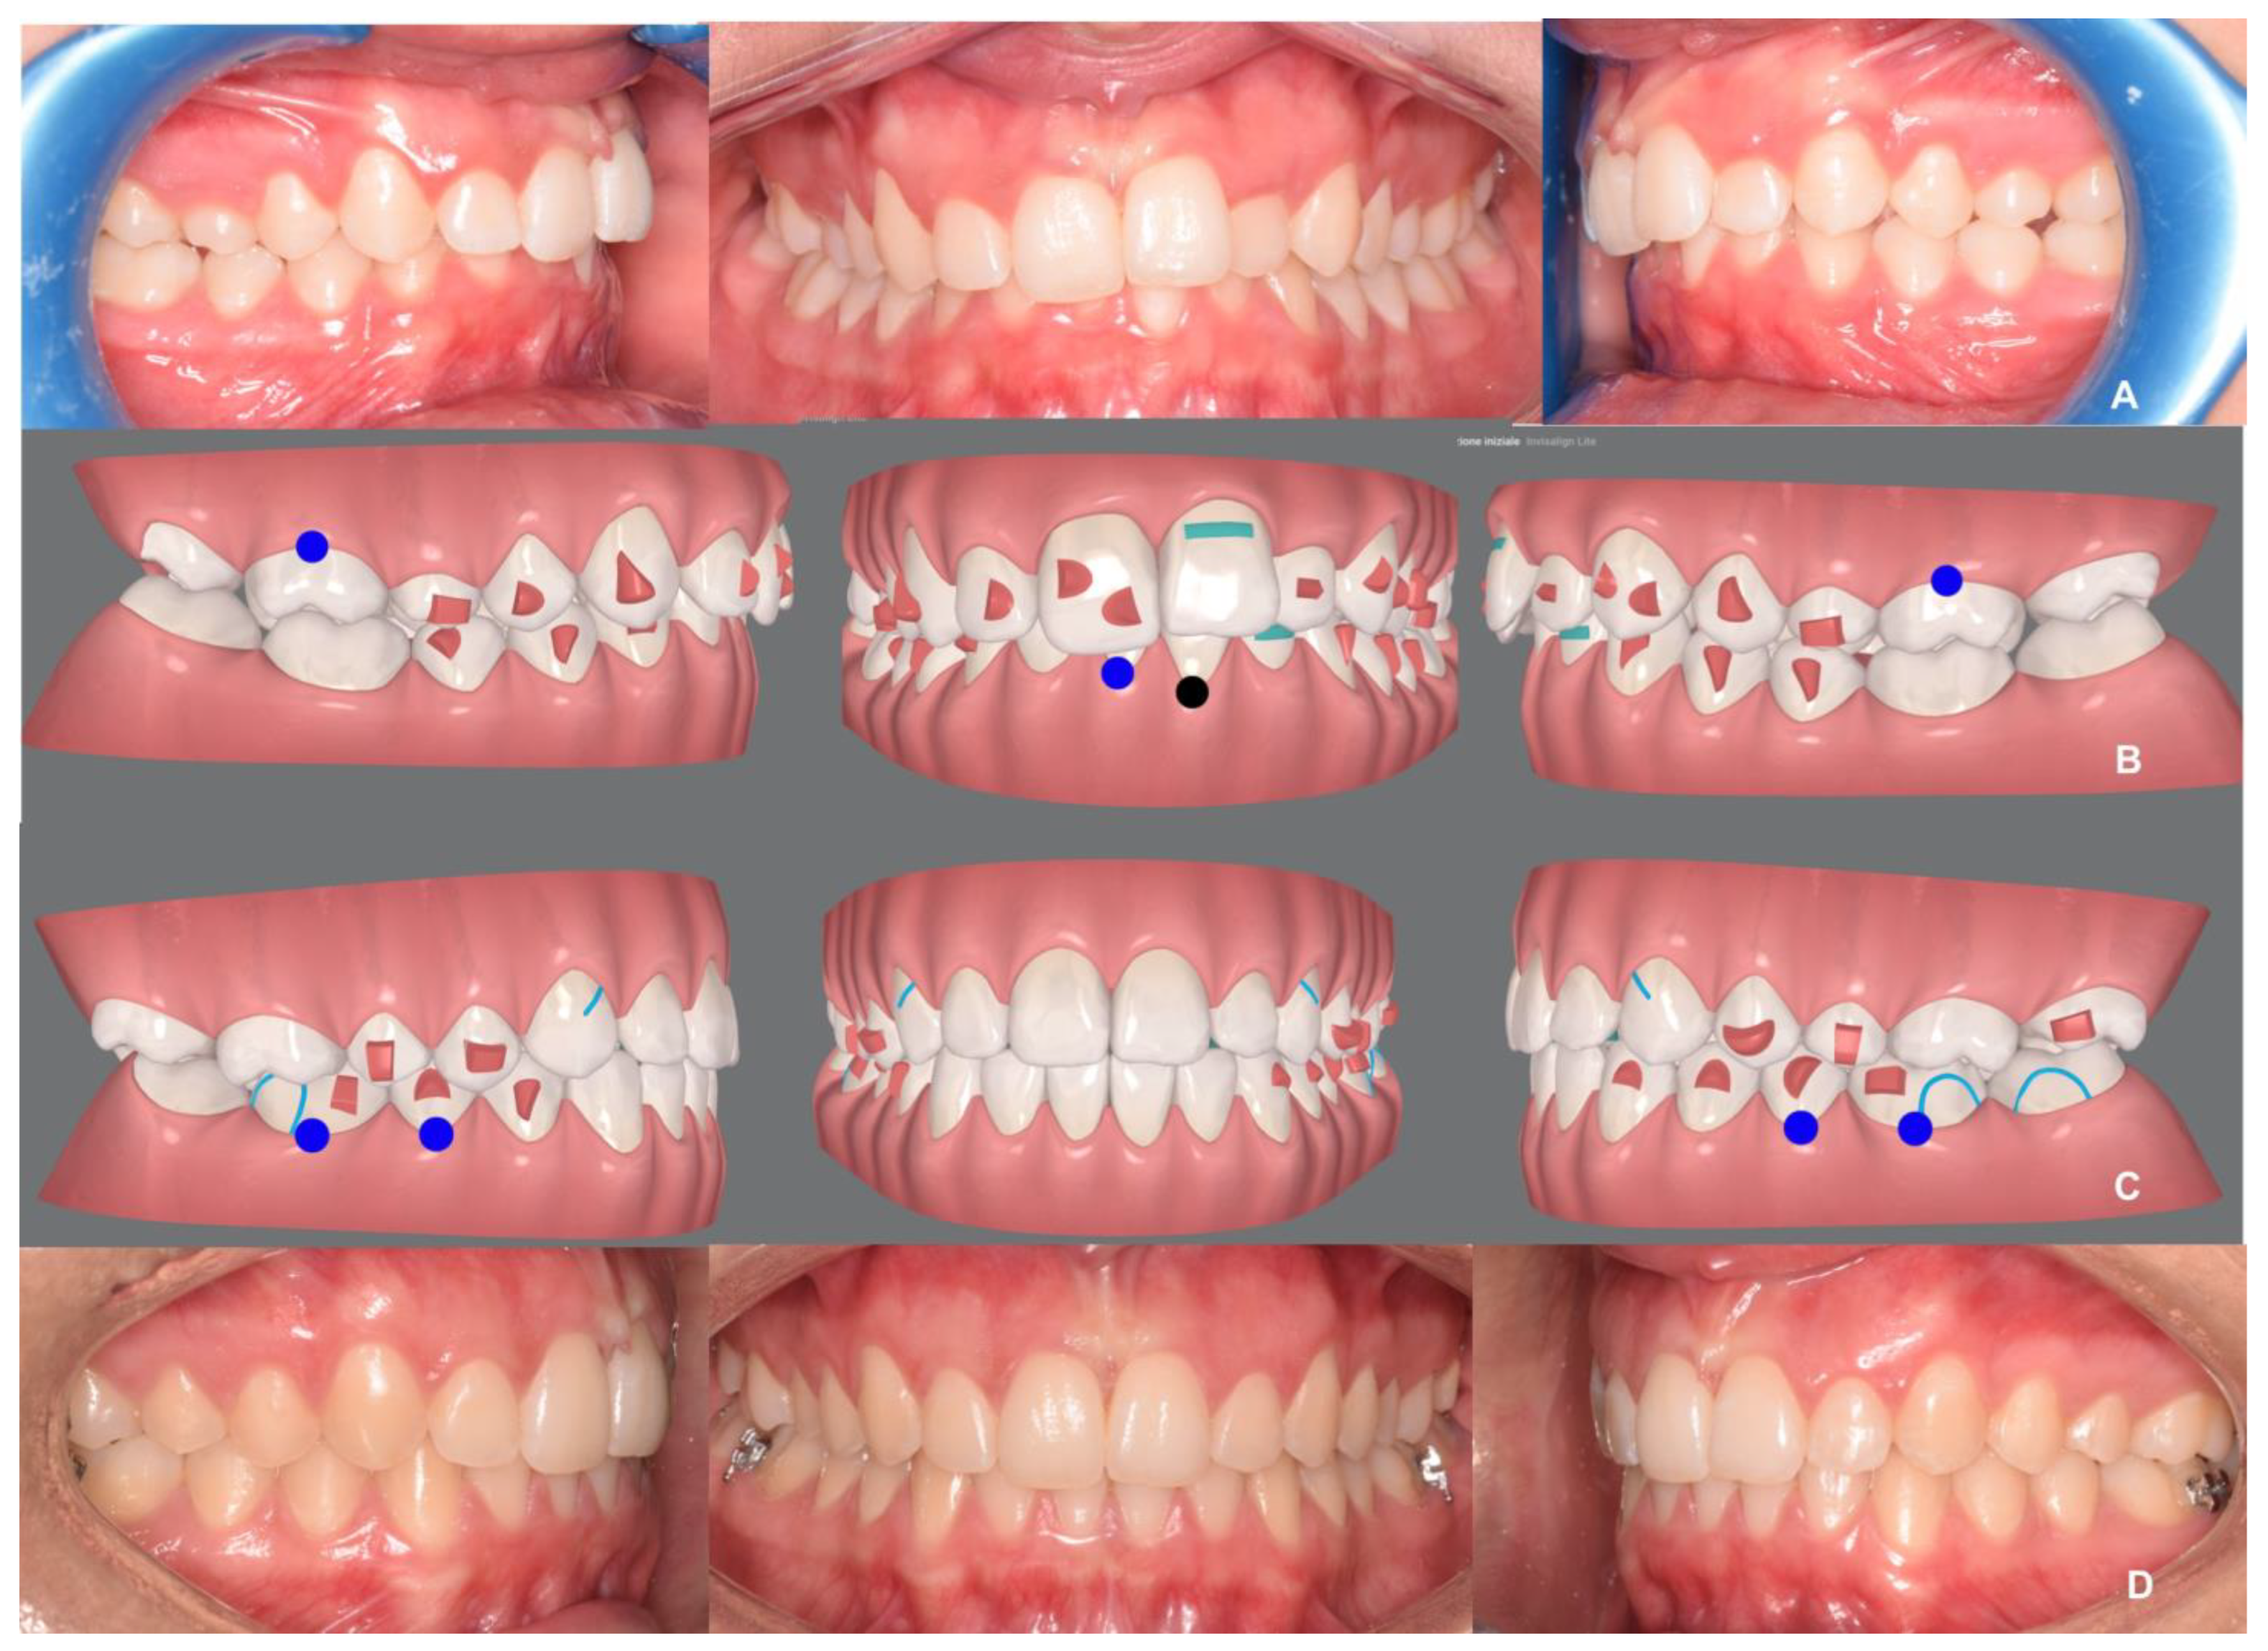 Invisalign invisible orthodontics in Paris- Dental alignment